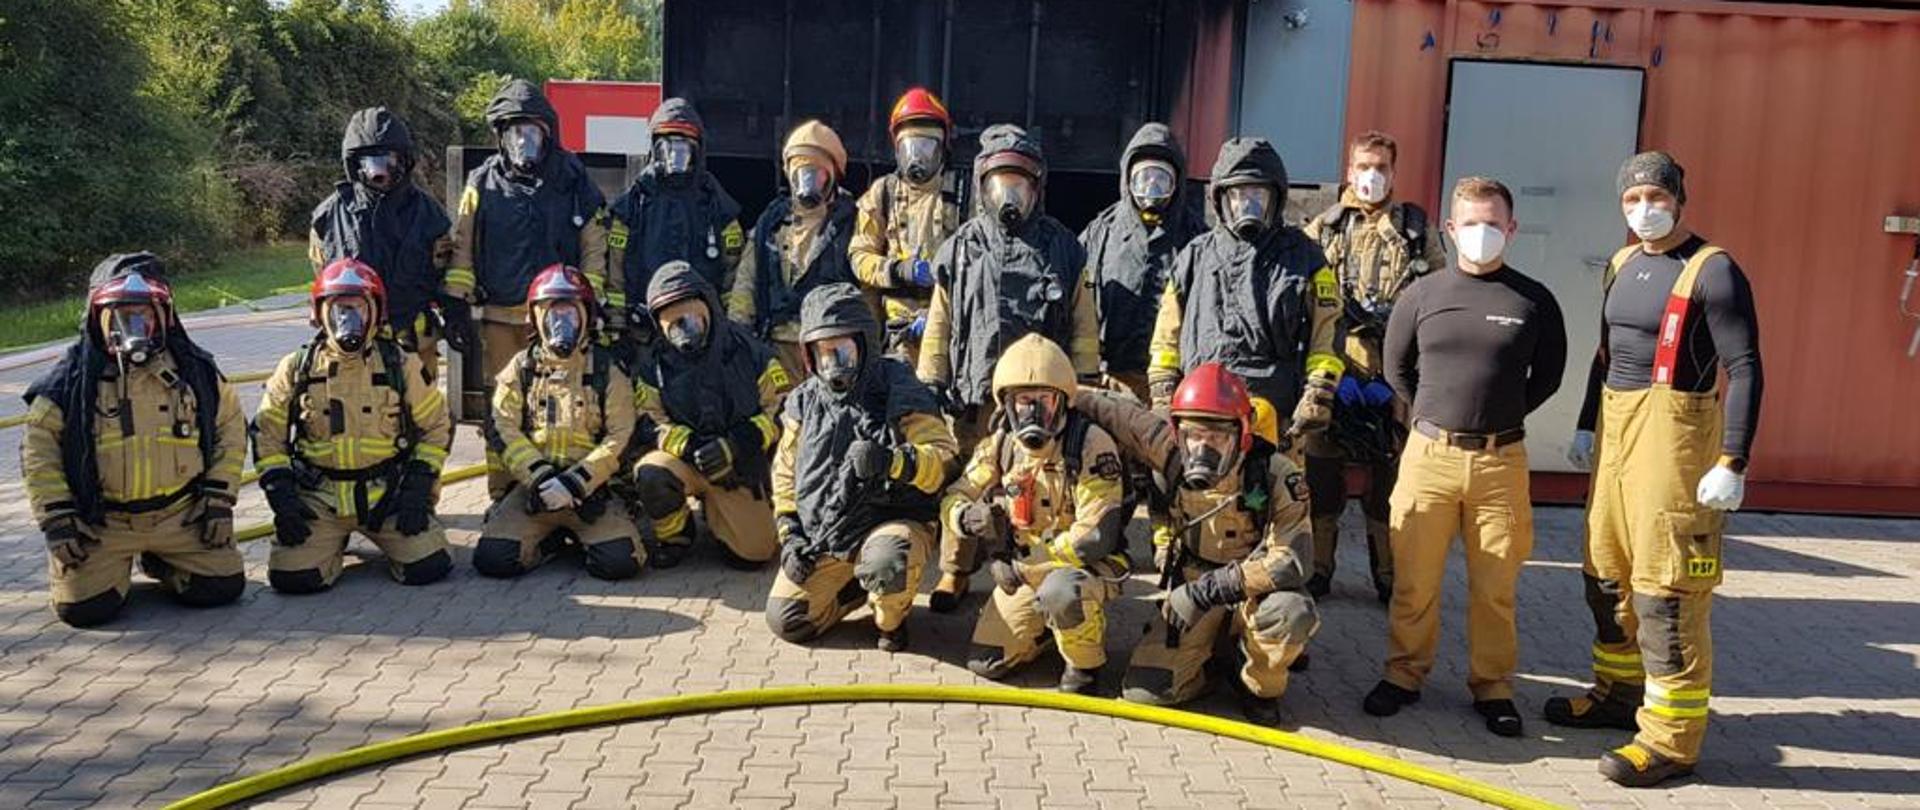 Zdjęcie przedstawia uczestników warsztatów szkoleniowych instruktorów gaszenia pożarów wewnętrznych. Strażacy w mundurach we wspólnym zdjęciu podczas ćwiczeń przed komorą rozgorzenia.